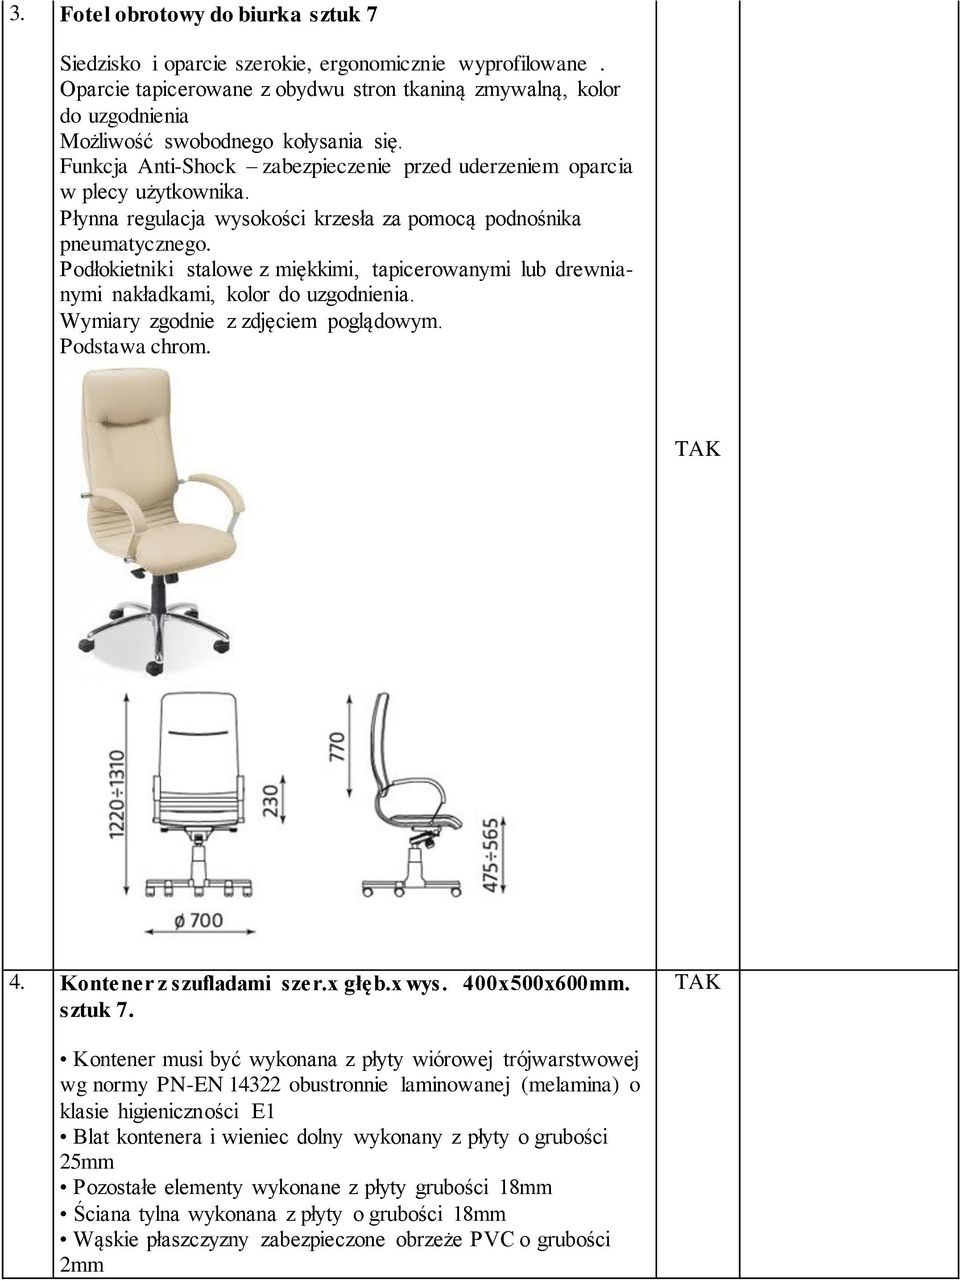 Płynna regulacja wysokości krzesła za pomocą podnośnika pneumatycznego. Podłokietniki stalowe z miękkimi, tapicerowanymi lub drewnianymi nakładkami, kolor do uzgodnienia.